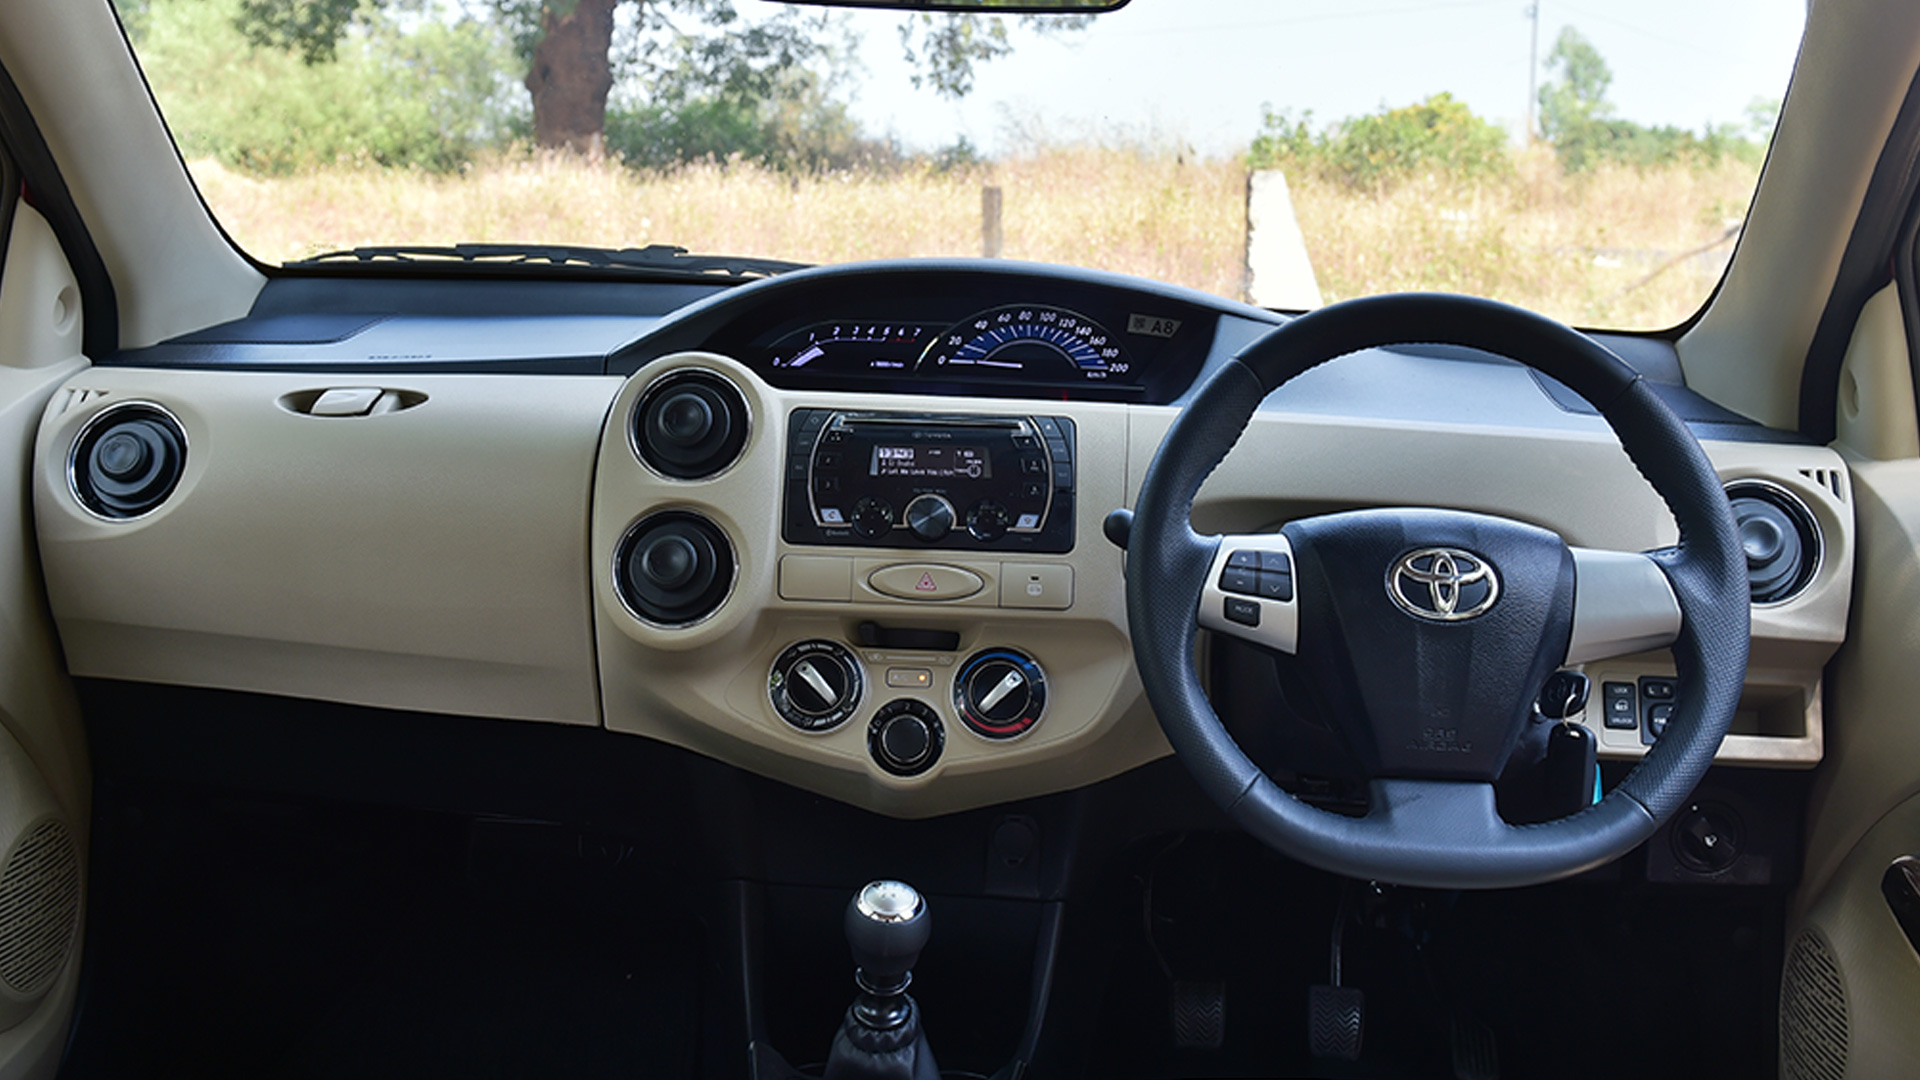 Toyota Platinum Etios 2016 Vxd Interior Car Photos Overdrive